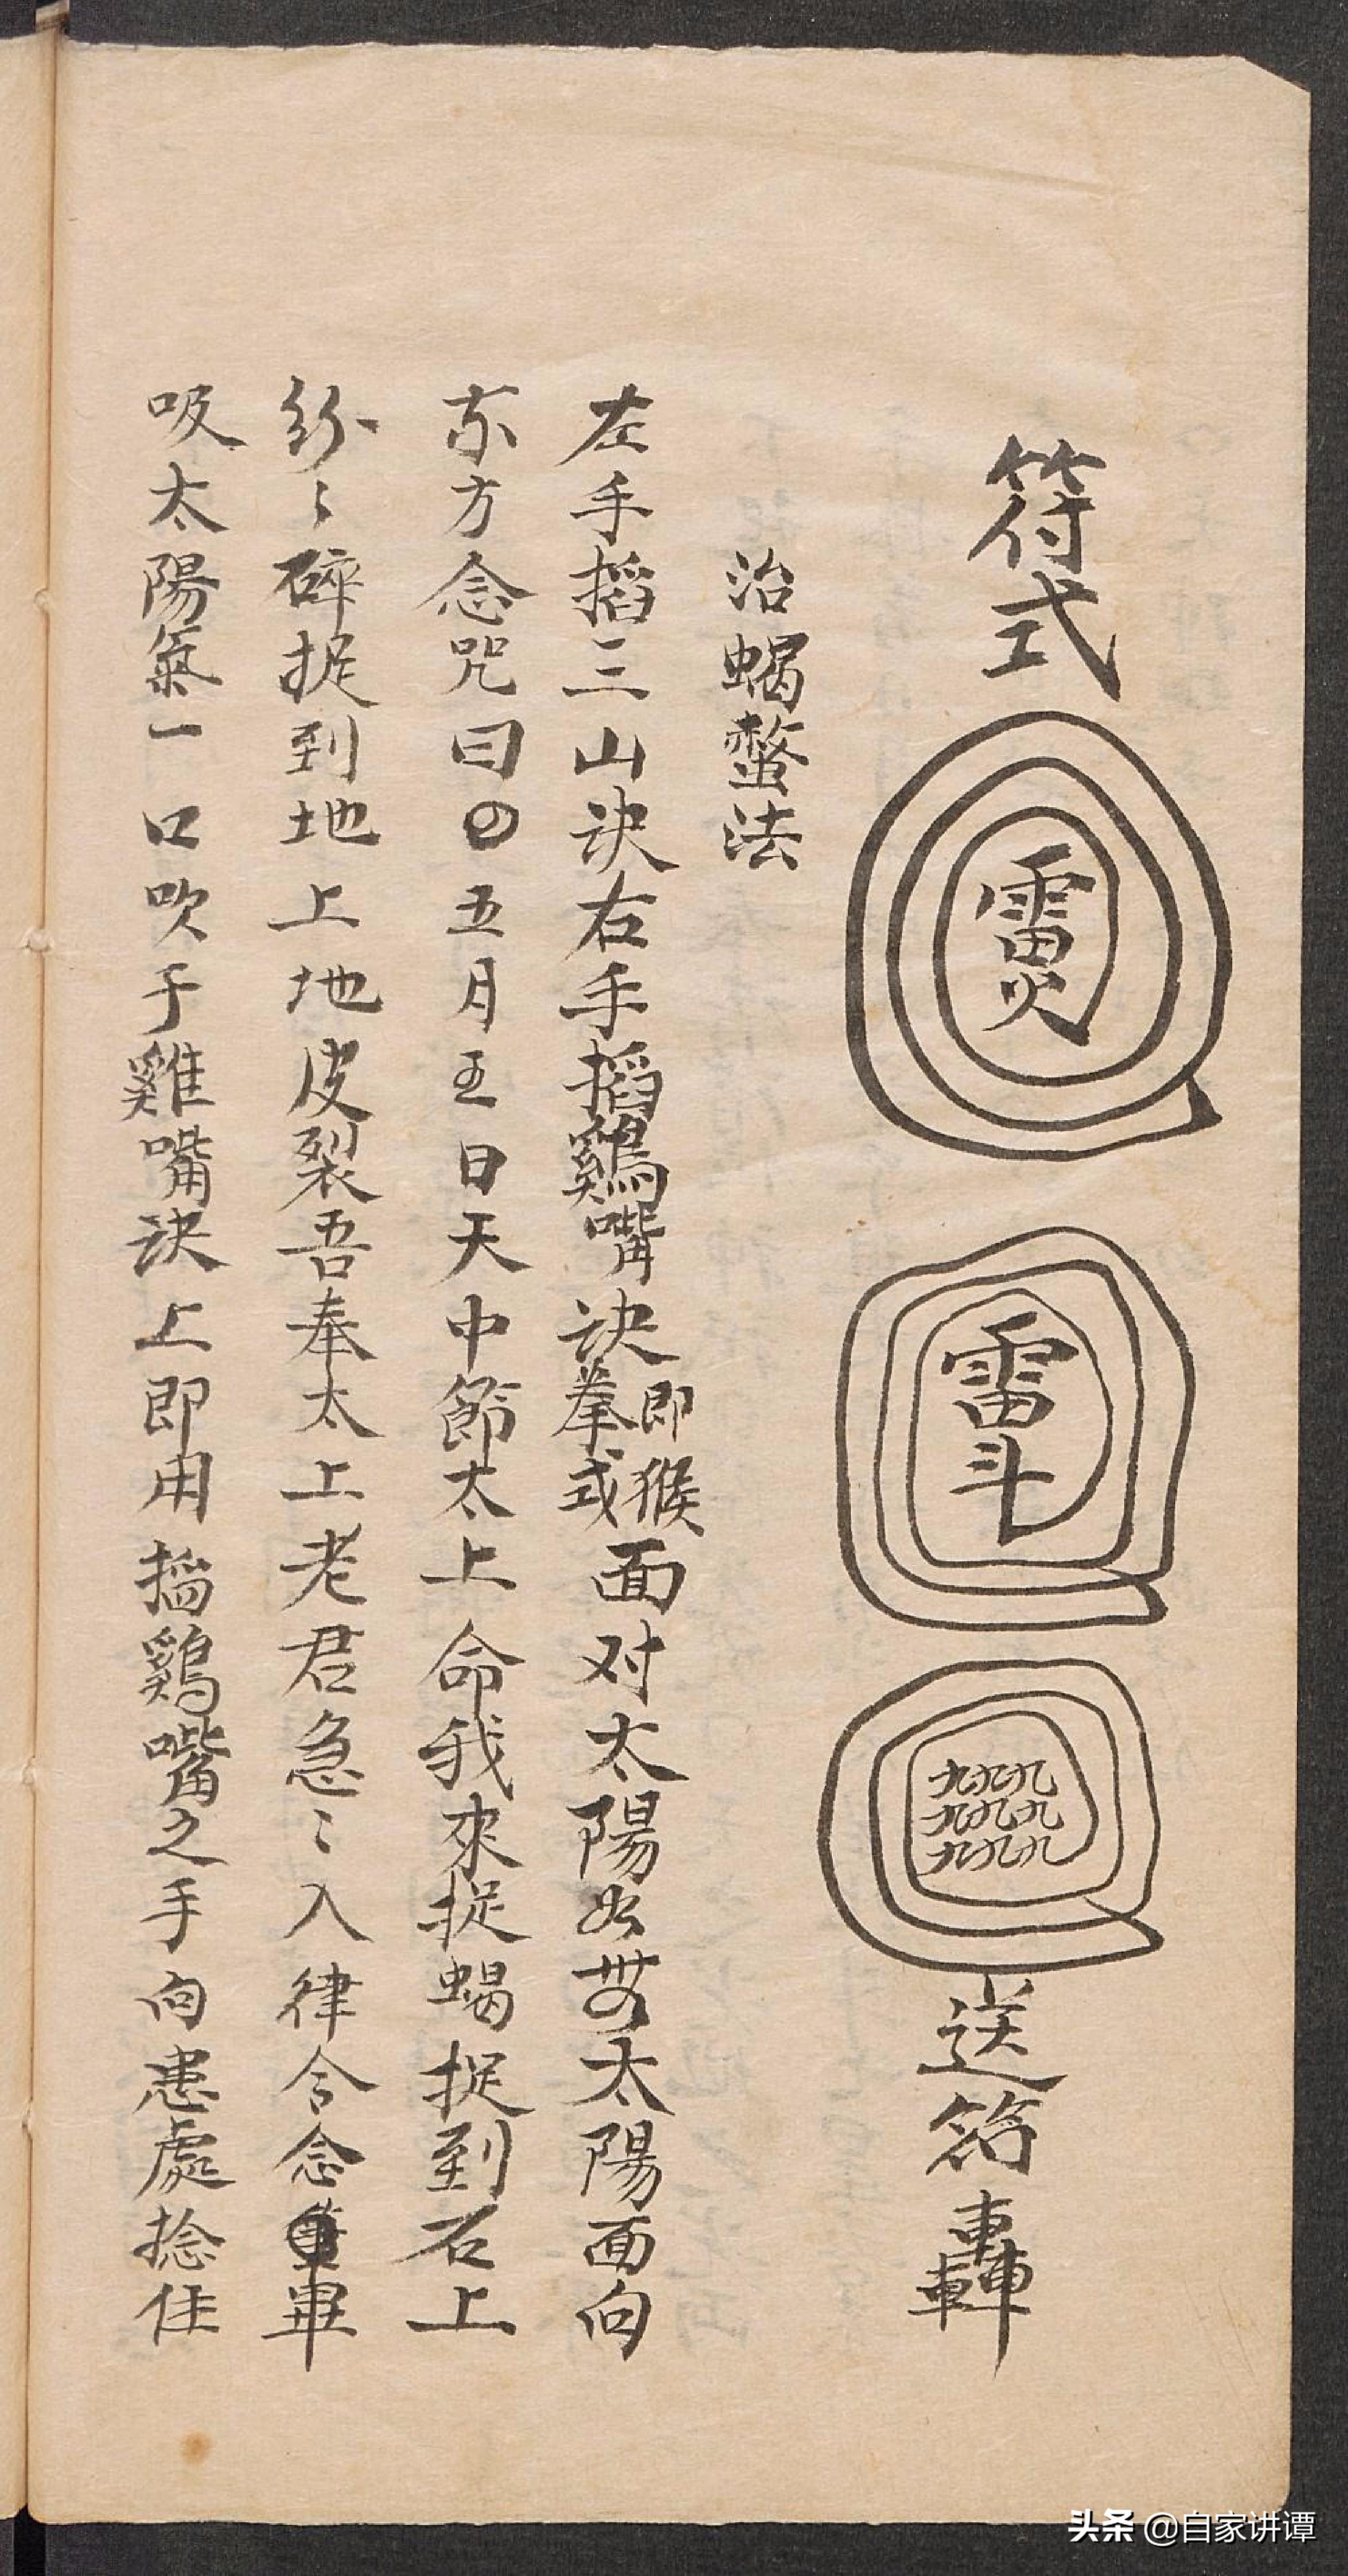 民间符咒抄本电子书——《符水杂抄》